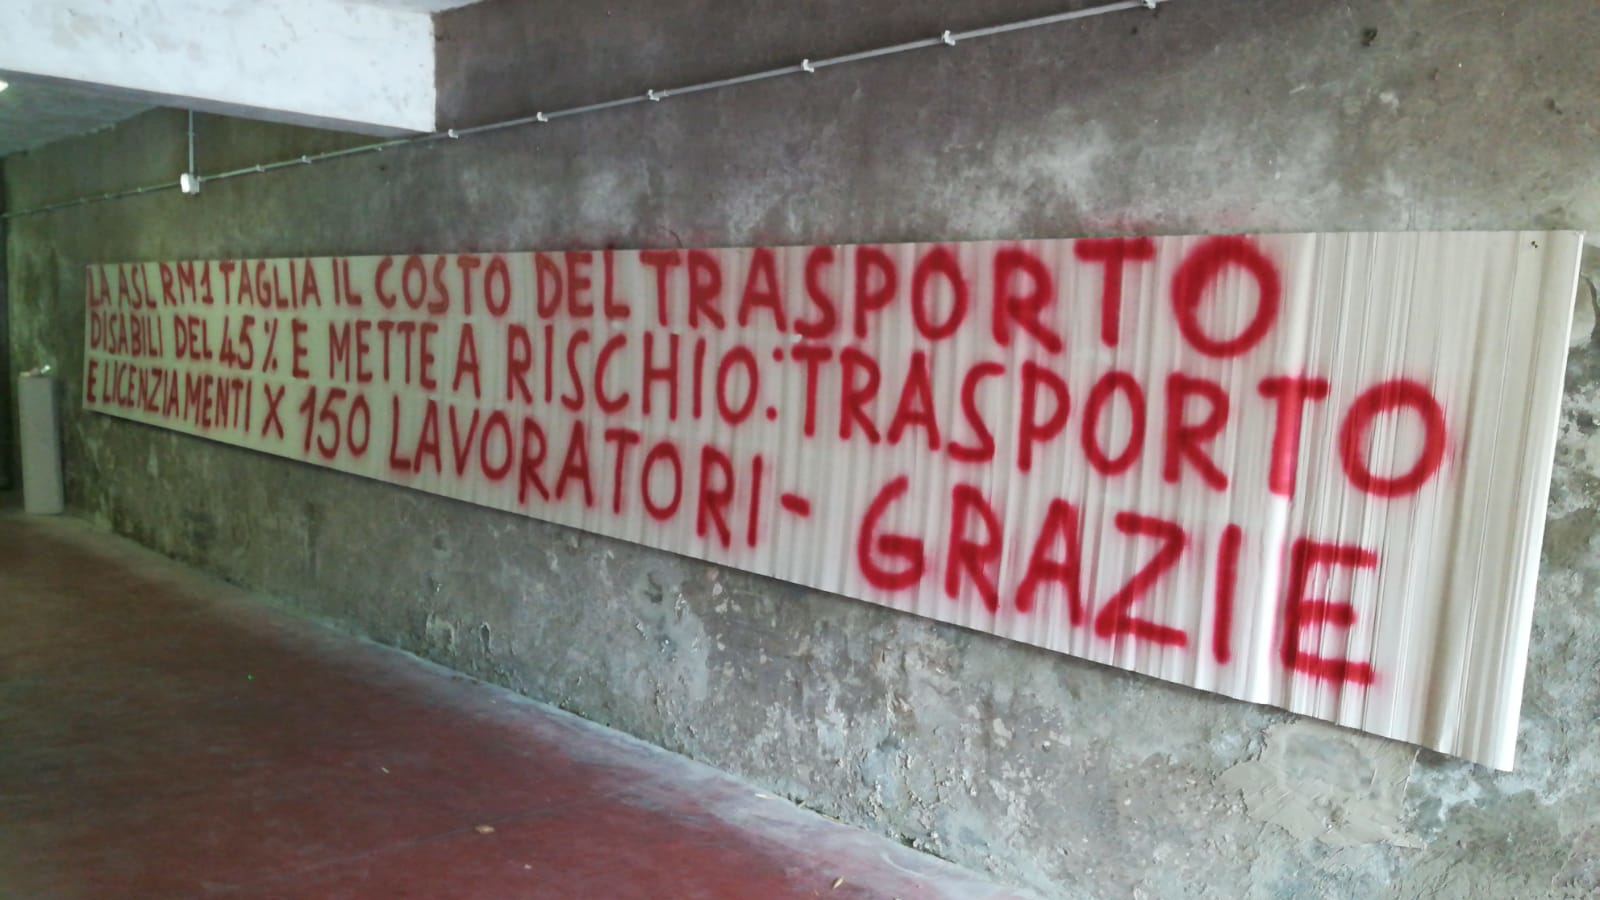 Trasporto disabili: gara al superibasso e mancano ancora le assunzioni. Proteste e sit in a Roma